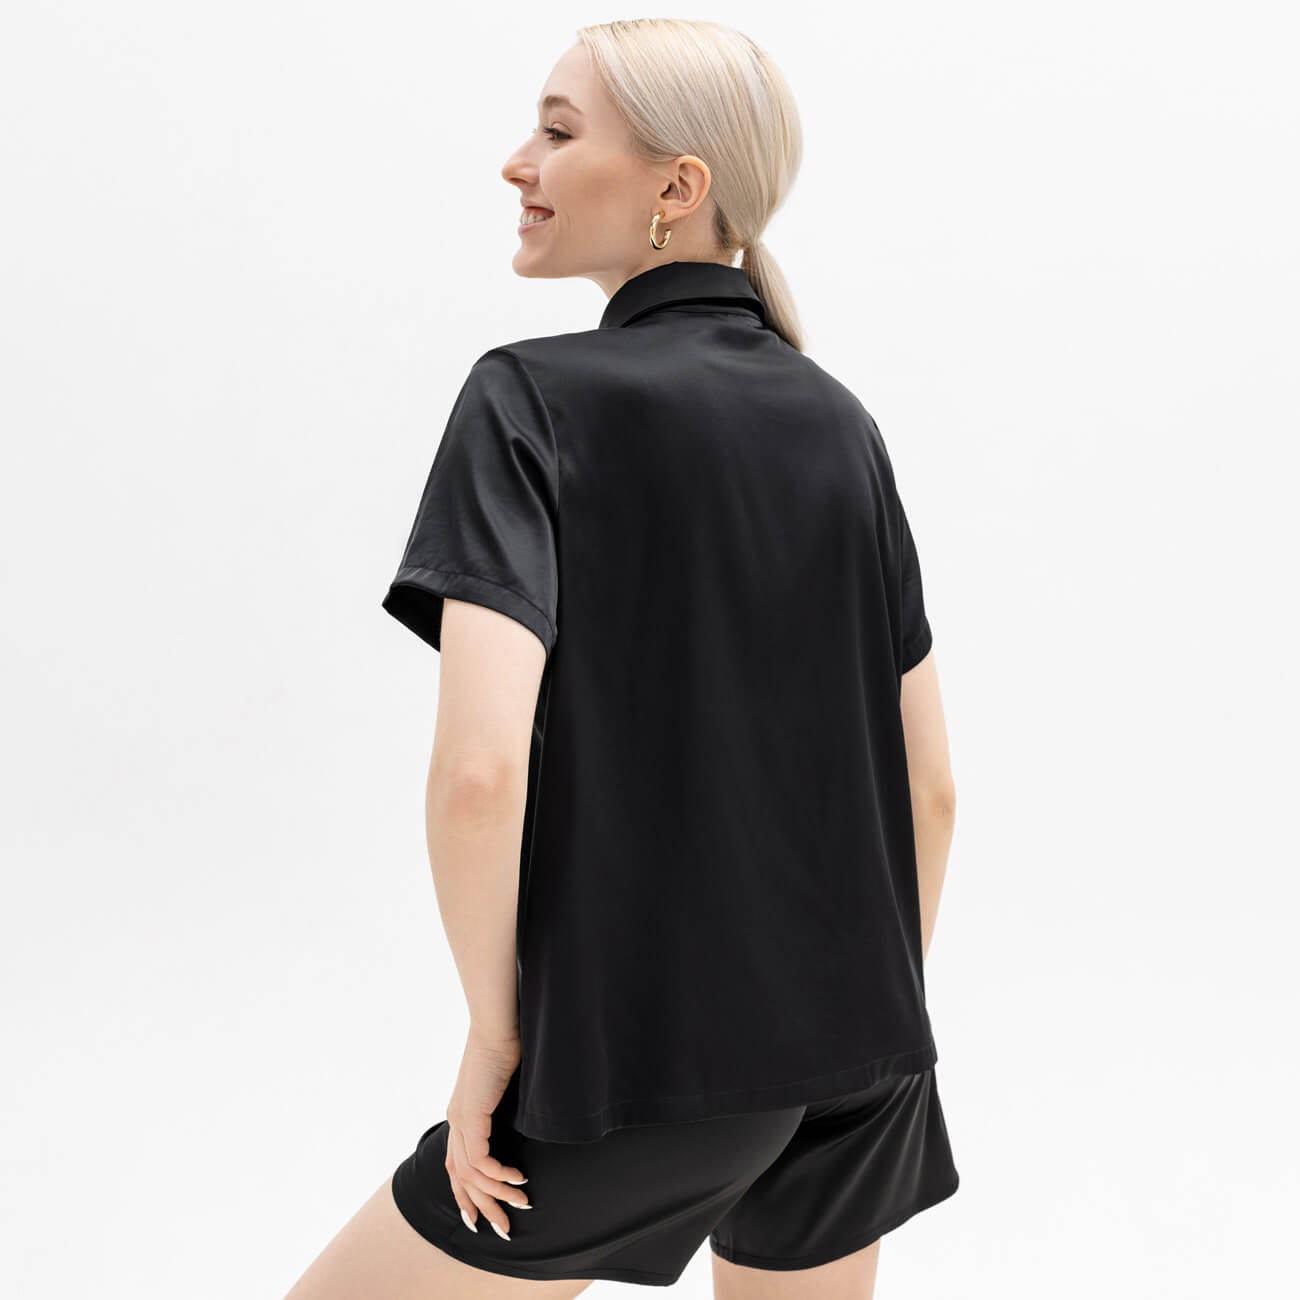 Рубашка женская, р. M, с коротким рукавом, полиэстер/эластан, черная, Madeline sfvest 4006 светоотражающая футболка рабочая одежда одежда рабочая одежда с коротким рукавом светоотражающая защитная рубашка дышащий